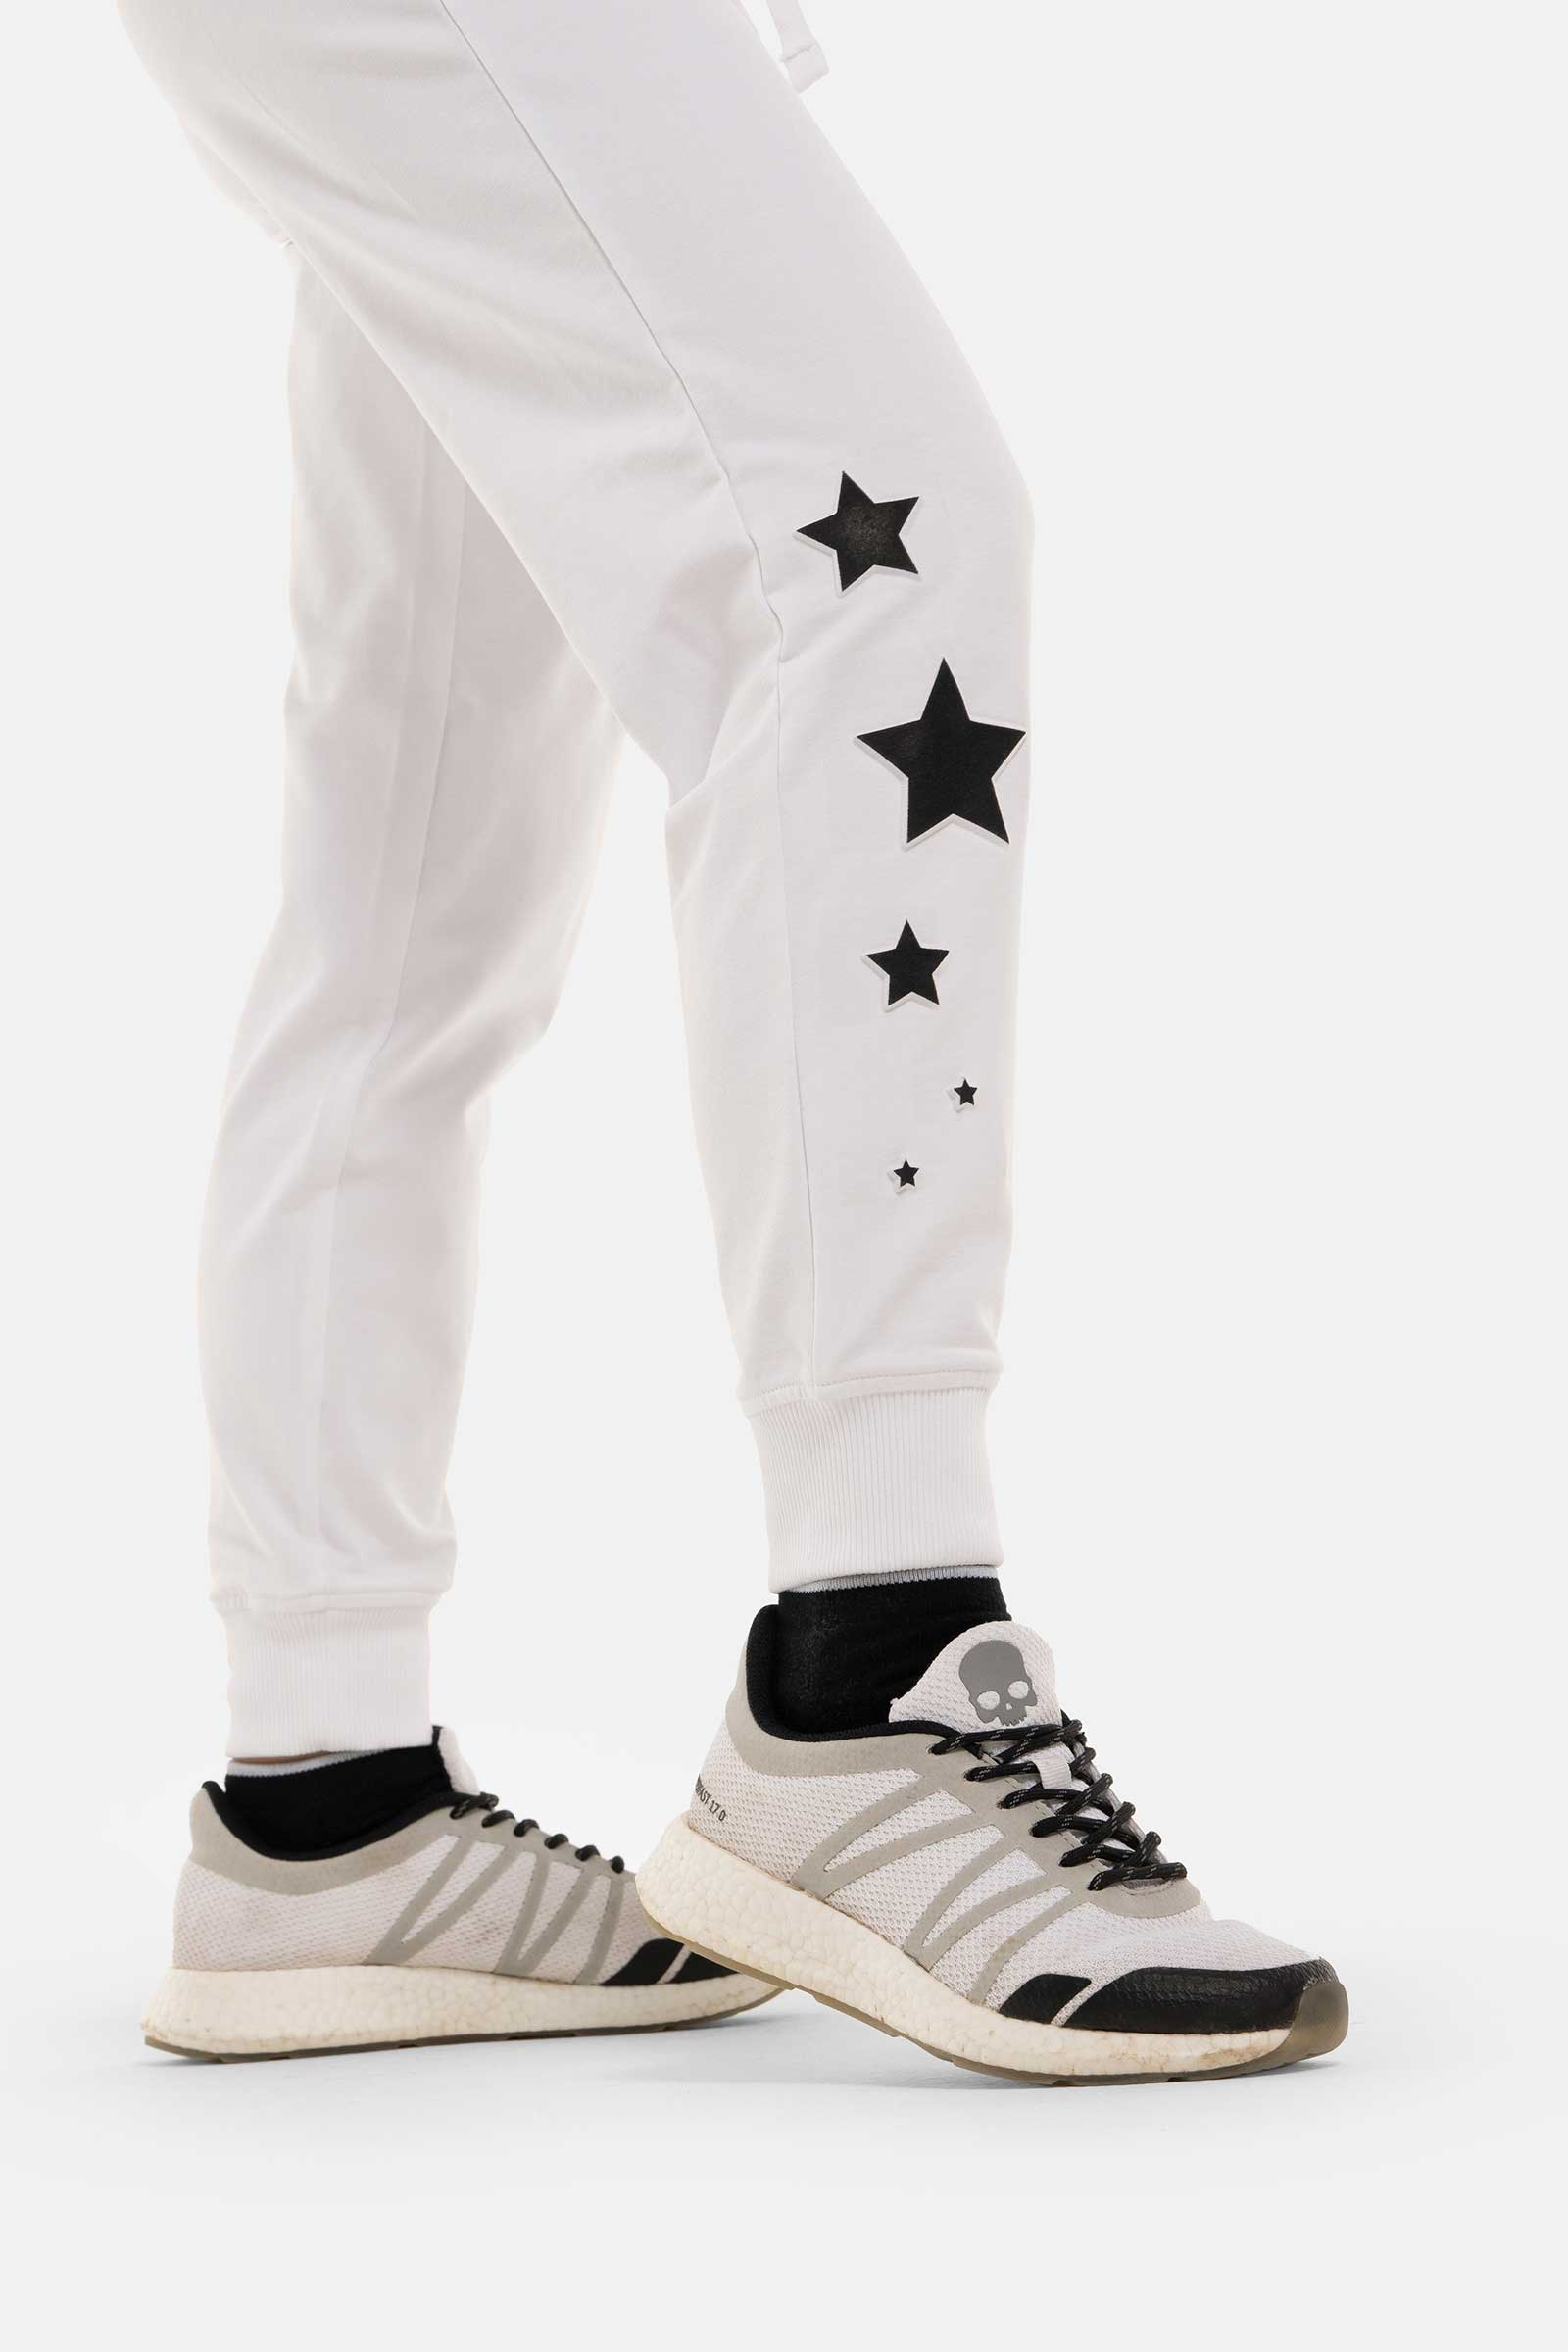 STARS PANTS - WHITE - Hydrogen - Luxury Sportwear